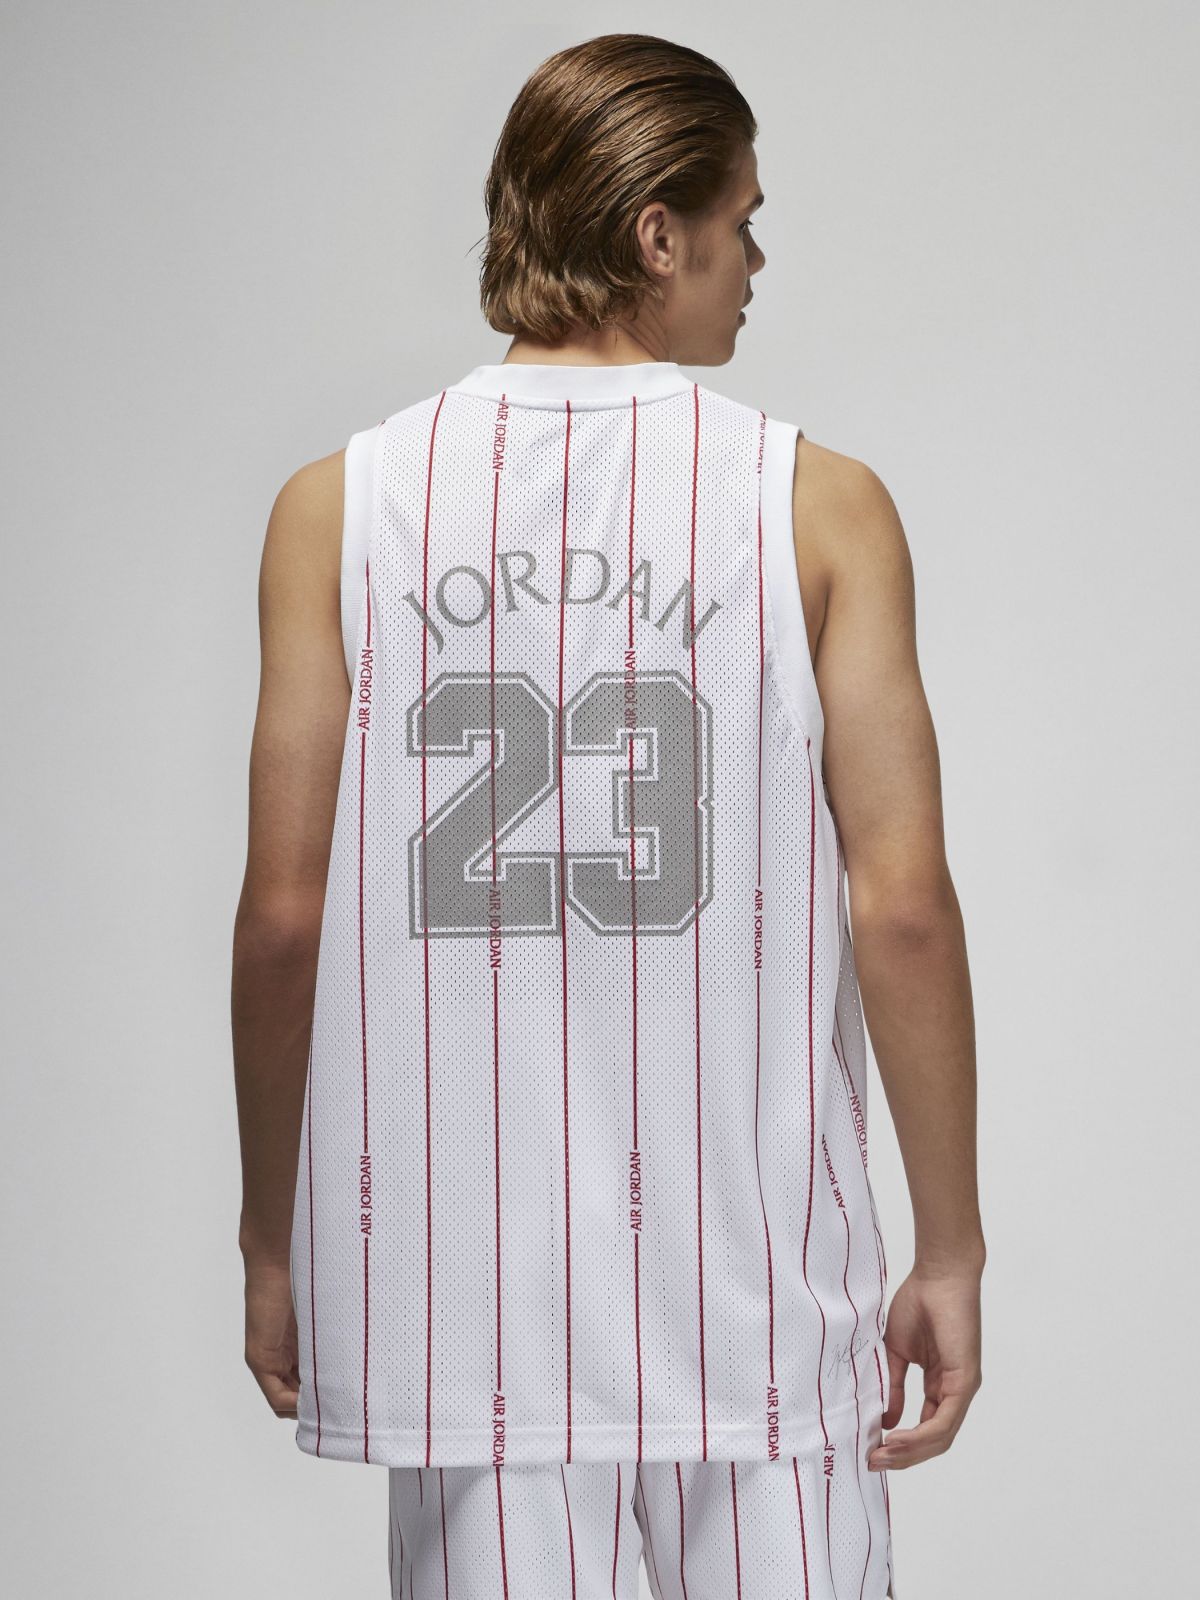  גופייה עם לוגו בהדפס פסים Jordan של JORDAN